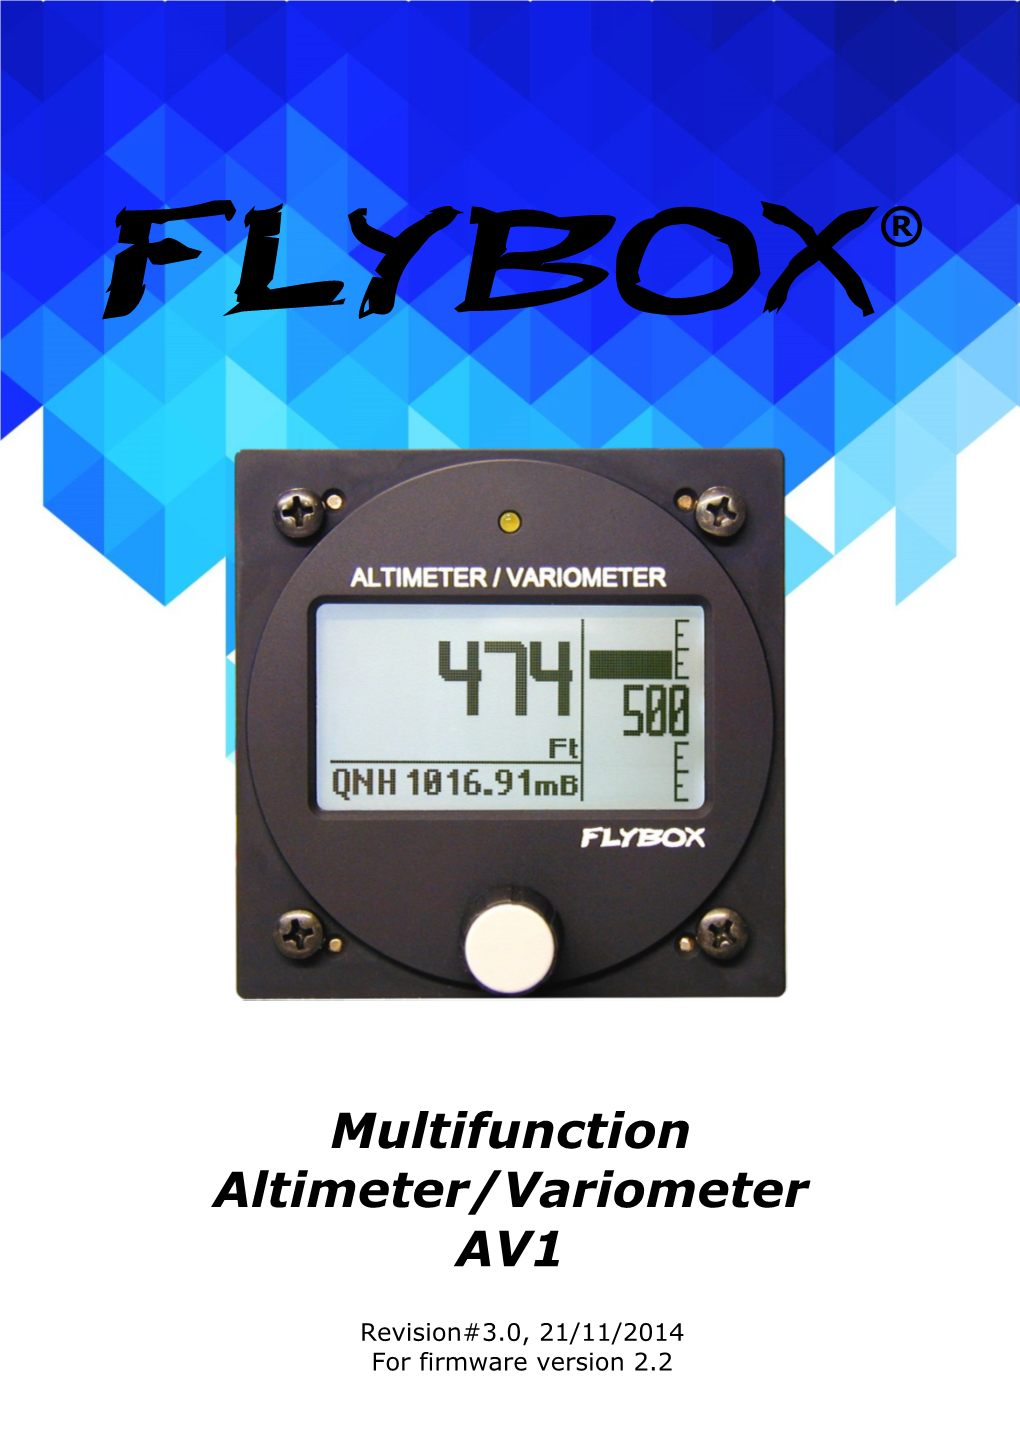 AV1 Altimeter/Variometer